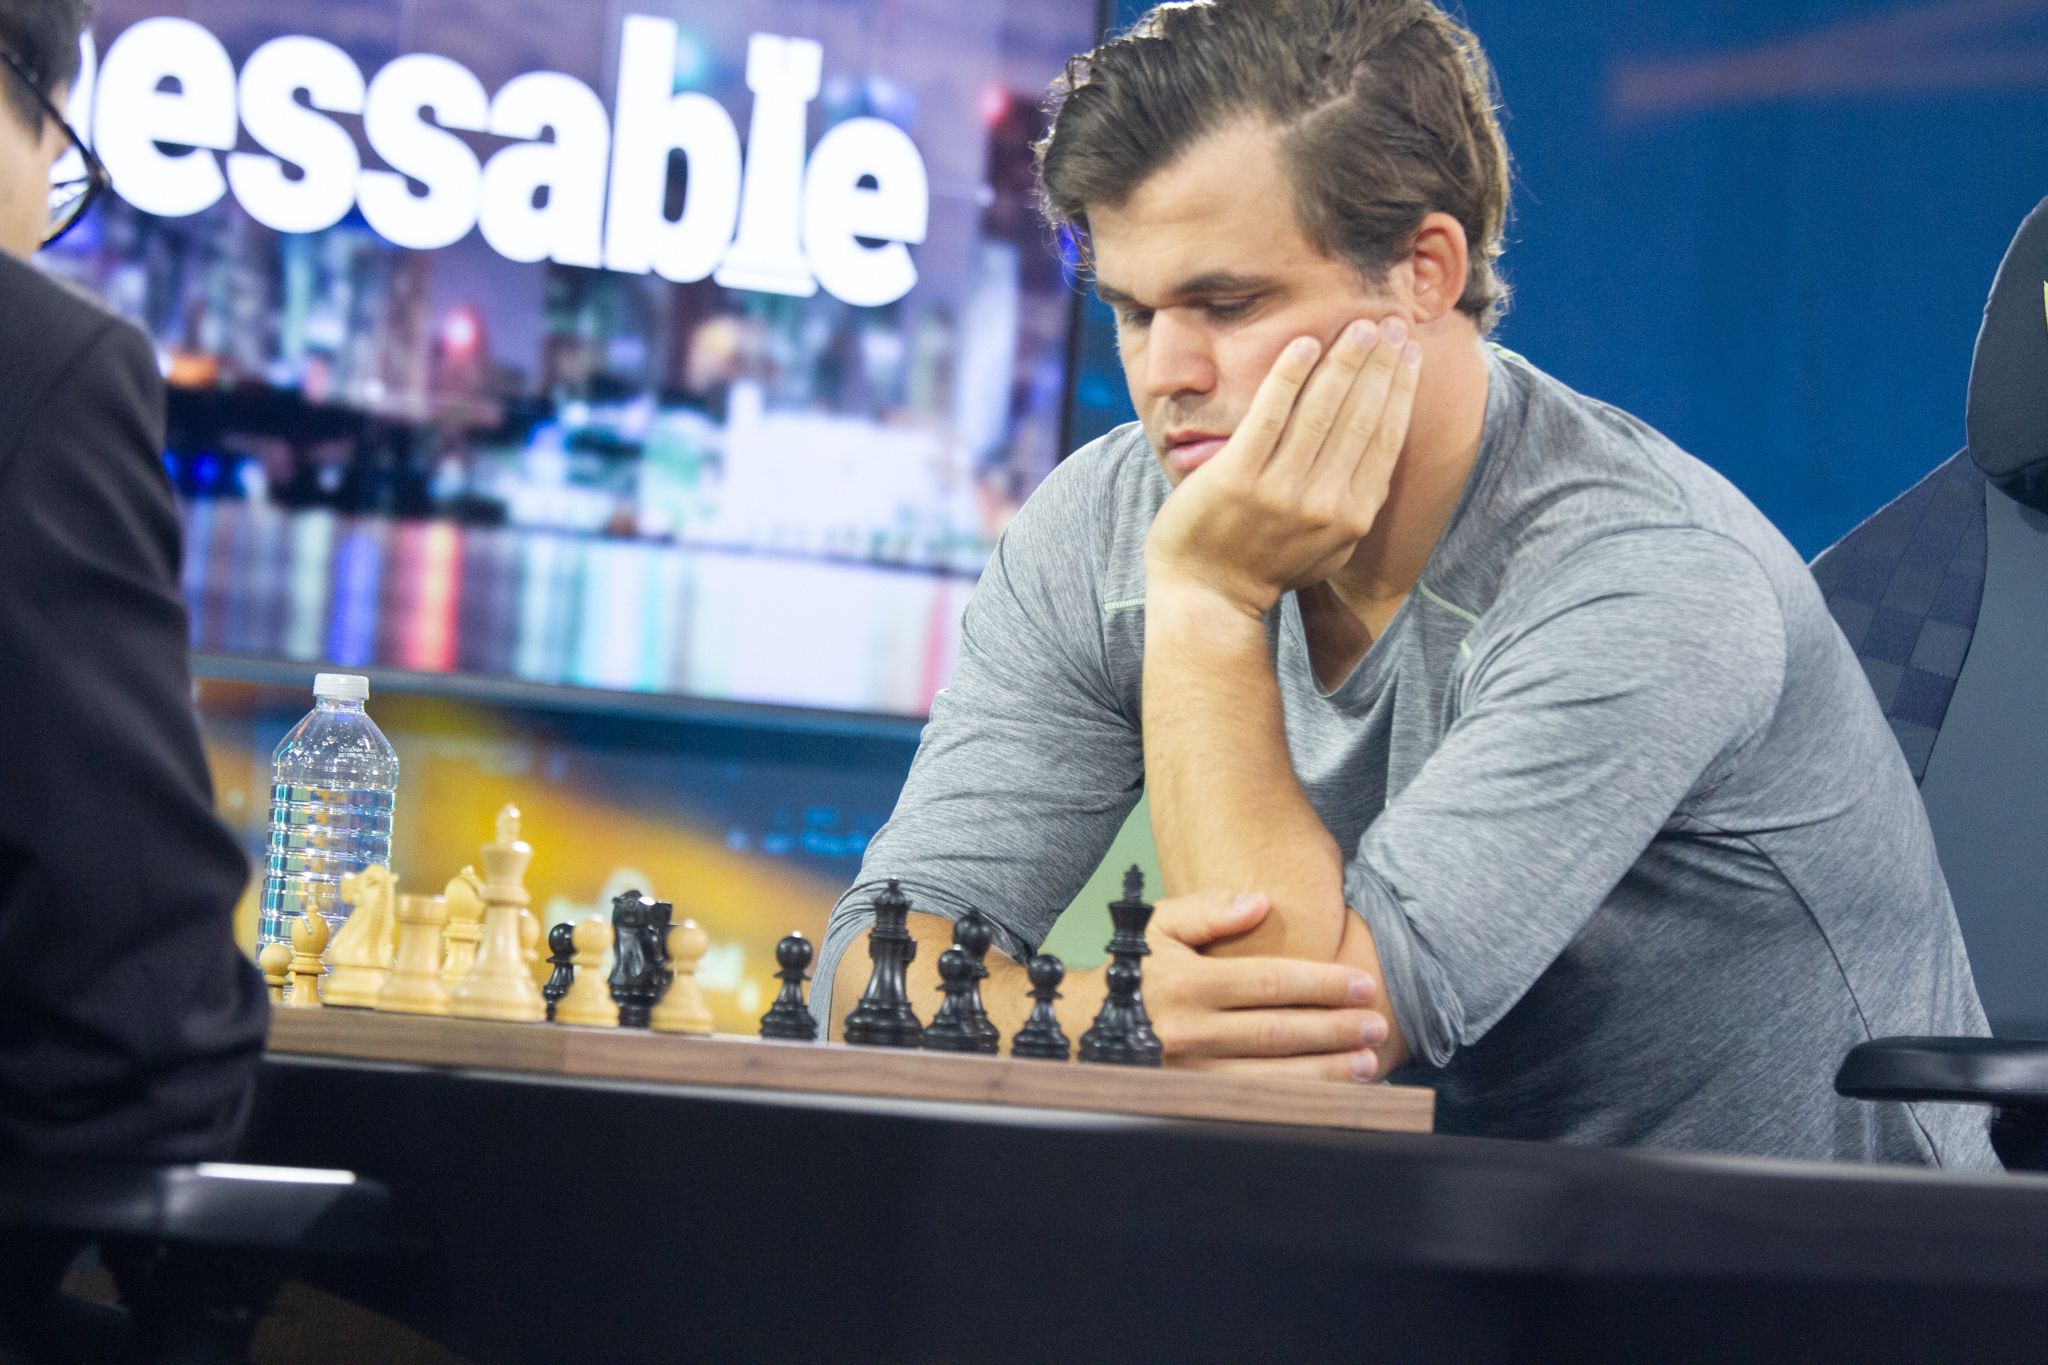 La fortuna sonríe a Carlsen y se clasifica para la final